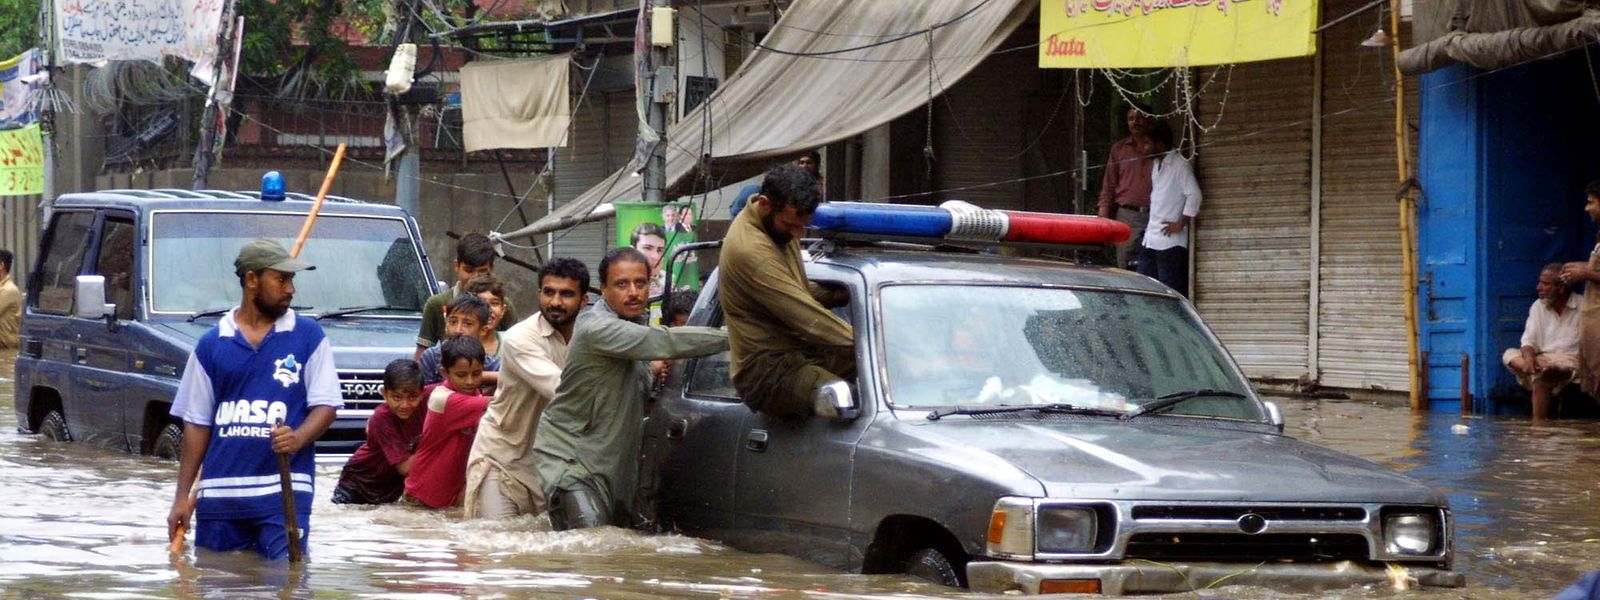 Pakistan, Lahore: Männer und Kinder schieben ein Auto über eine überflutete Straße.